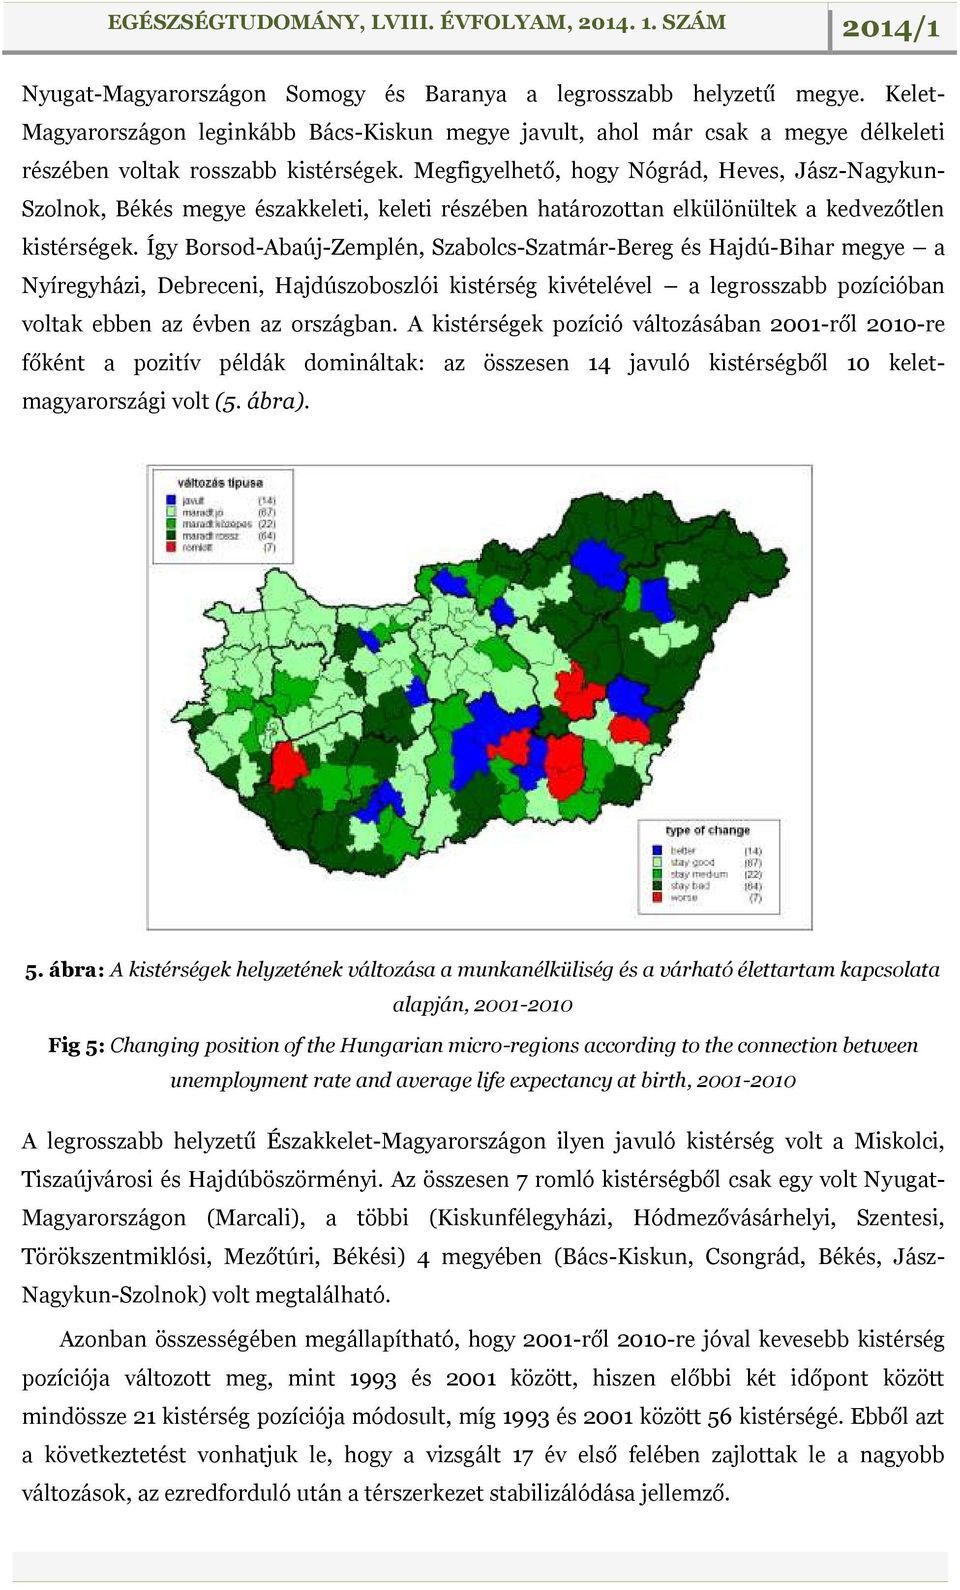 Így Borsod-Abaúj-Zemplén, Szabolcs-Szatmár-Bereg és Hajdú-Bihar megye a Nyíregyházi, Debreceni, Hajdúszoboszlói kistérség kivételével a legrosszabb pozícióban voltak ebben az évben az országban.